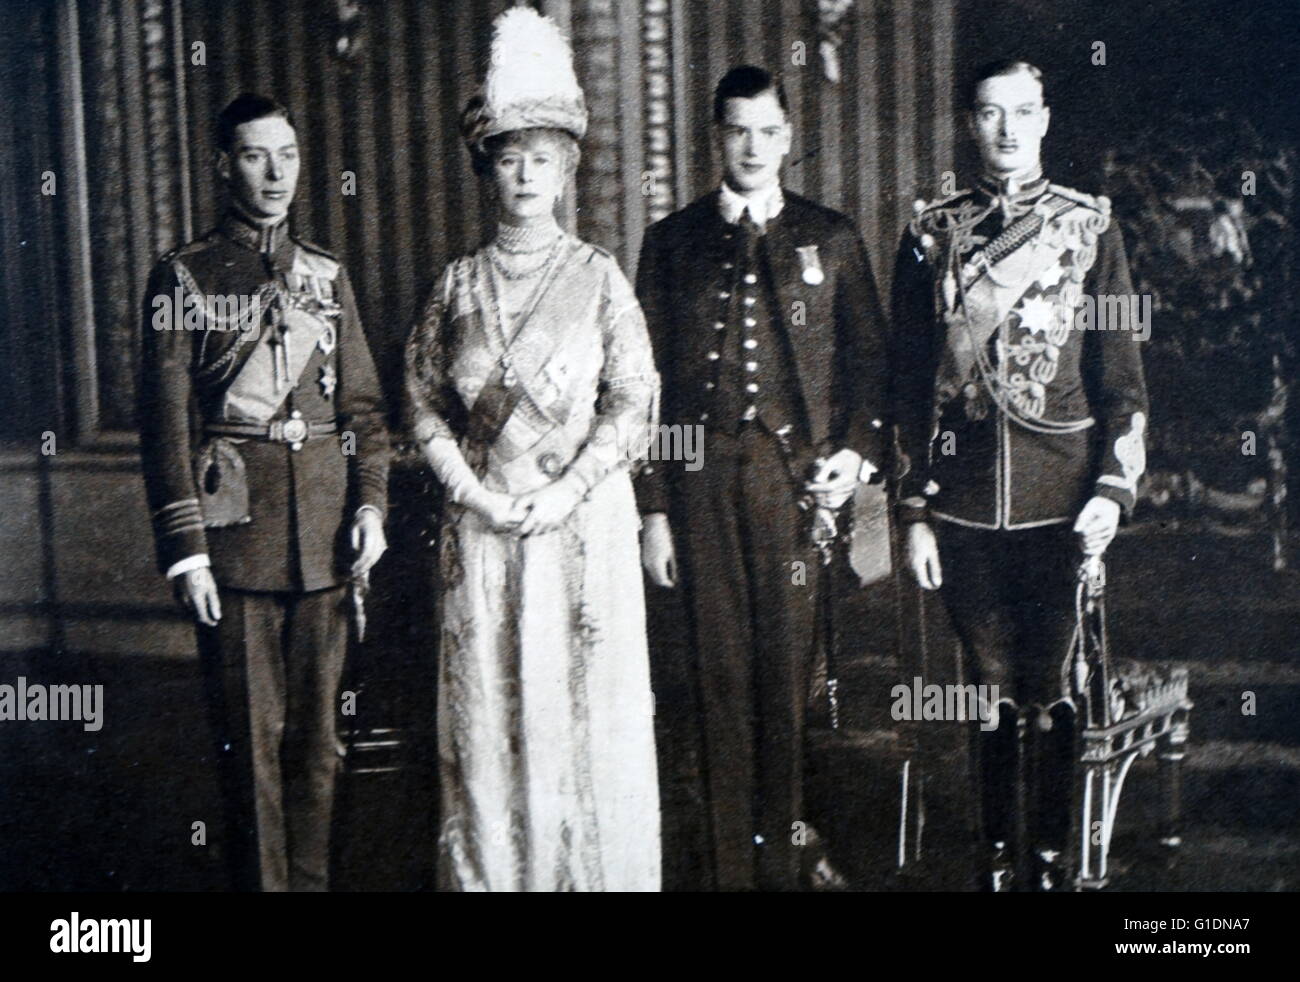 Fotografia della Queen Mary di Teck, la duchessa di York con i suoi figli Albert Frederick Arthur George (1895-1952), il principe Henry, duca di Gloucester (1900-1974) e Prince George, Duca di Kent (1902-1942). Datata del XIX secolo Foto Stock